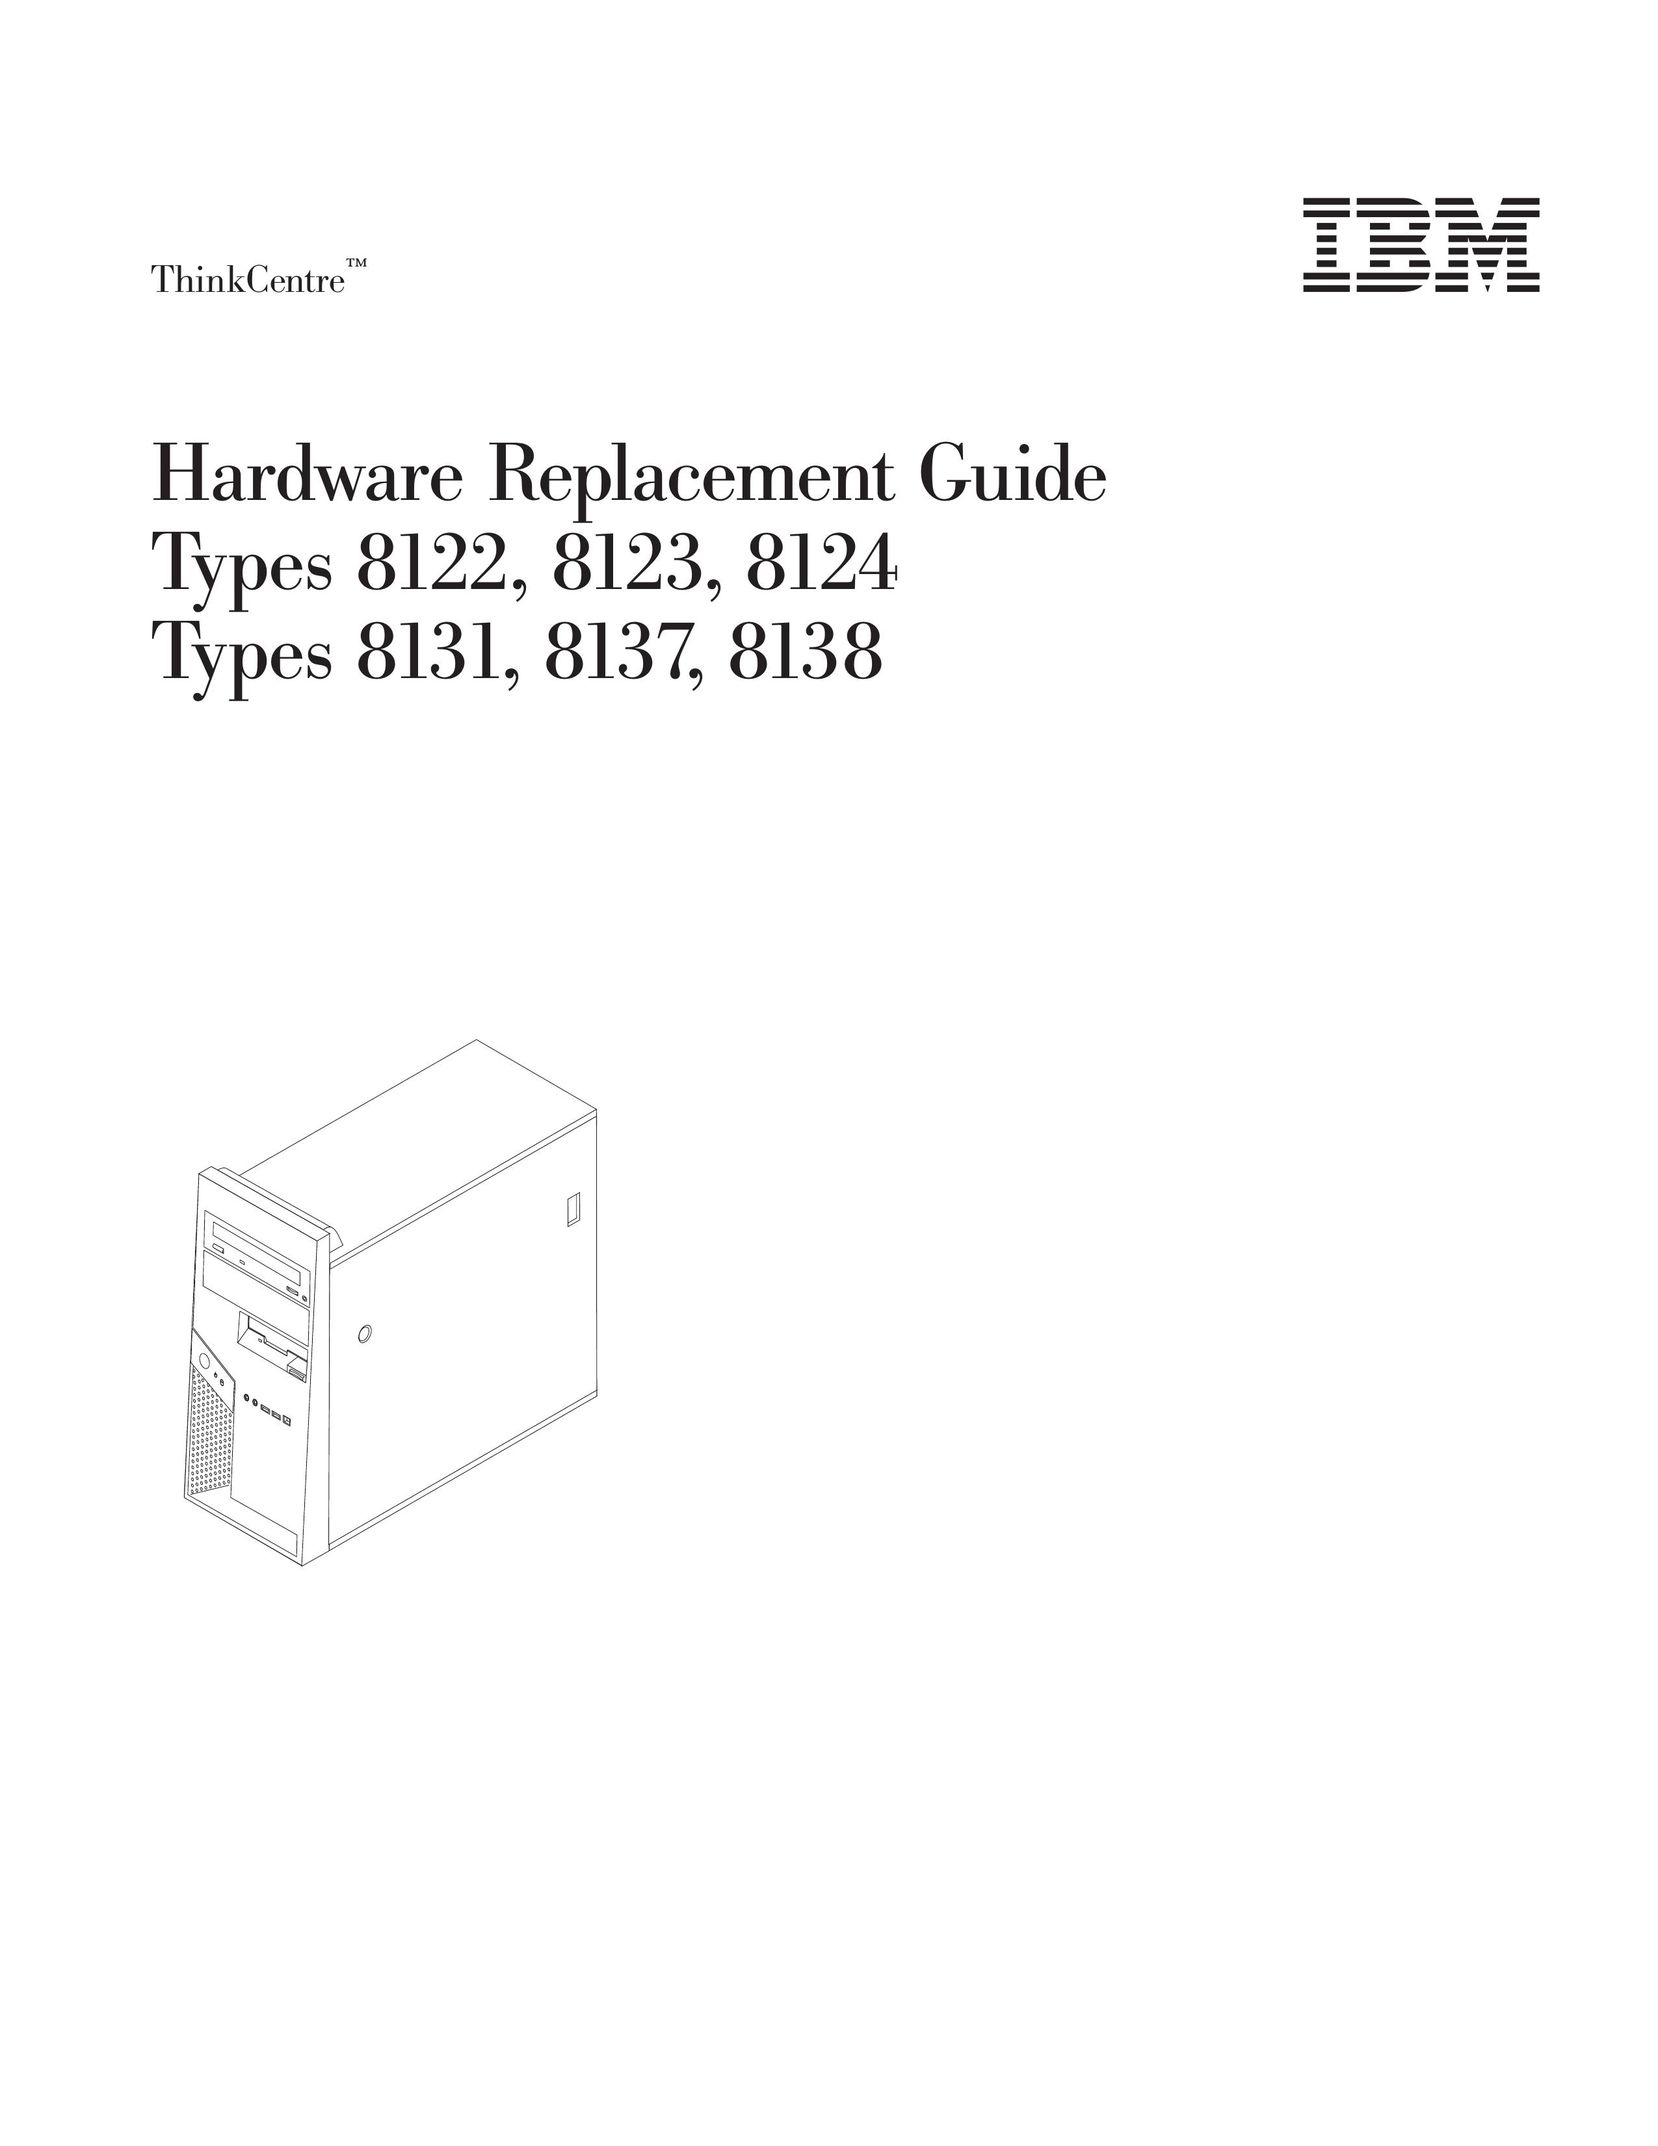 IBM 8123 Computer Hardware User Manual